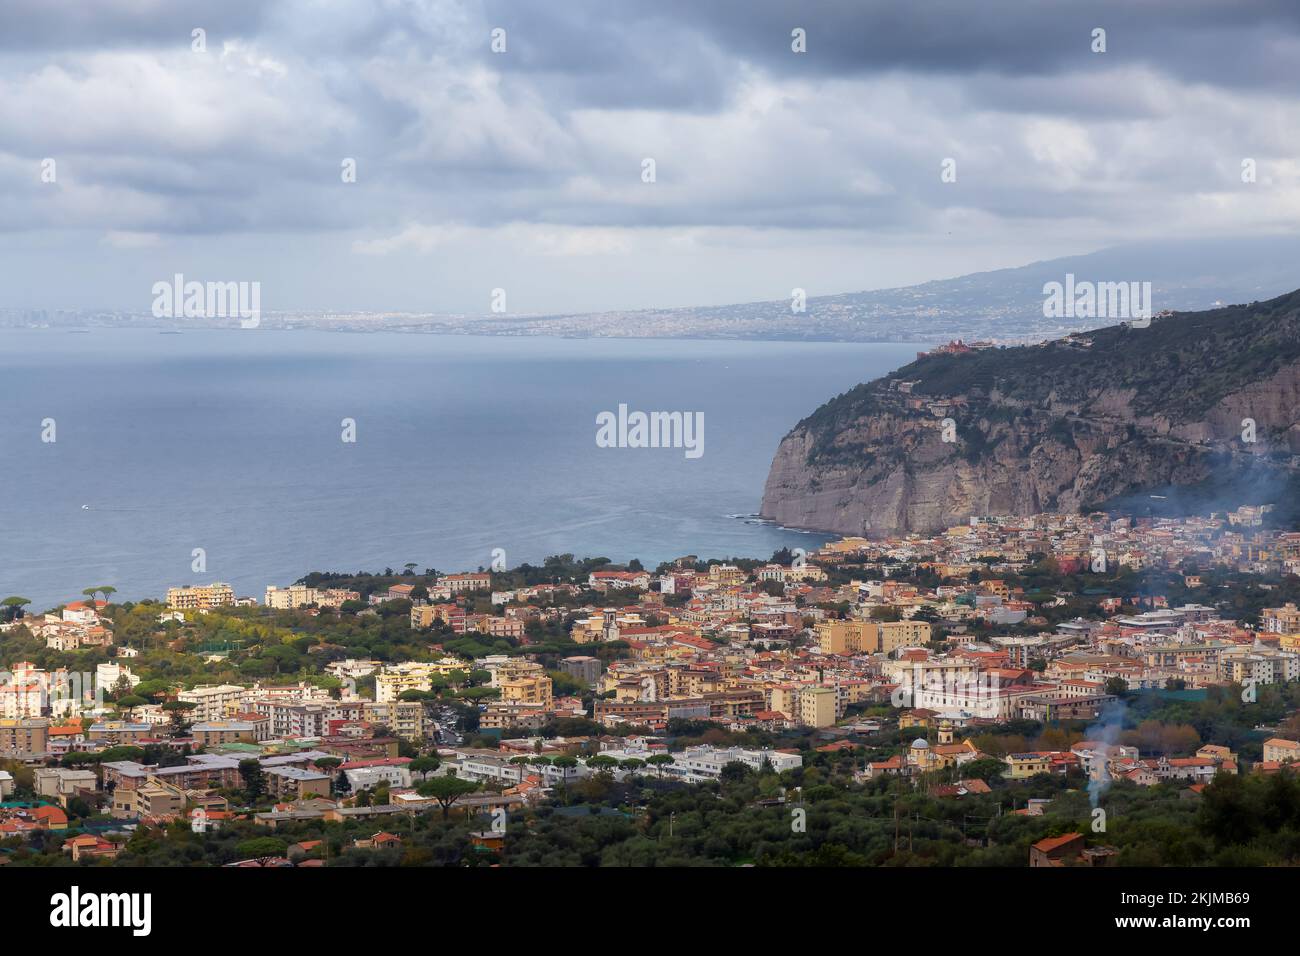 Aerial View of Touristic Town, Sorrento, Italy. Coast of Tyrrhenian Sea. Stock Photo